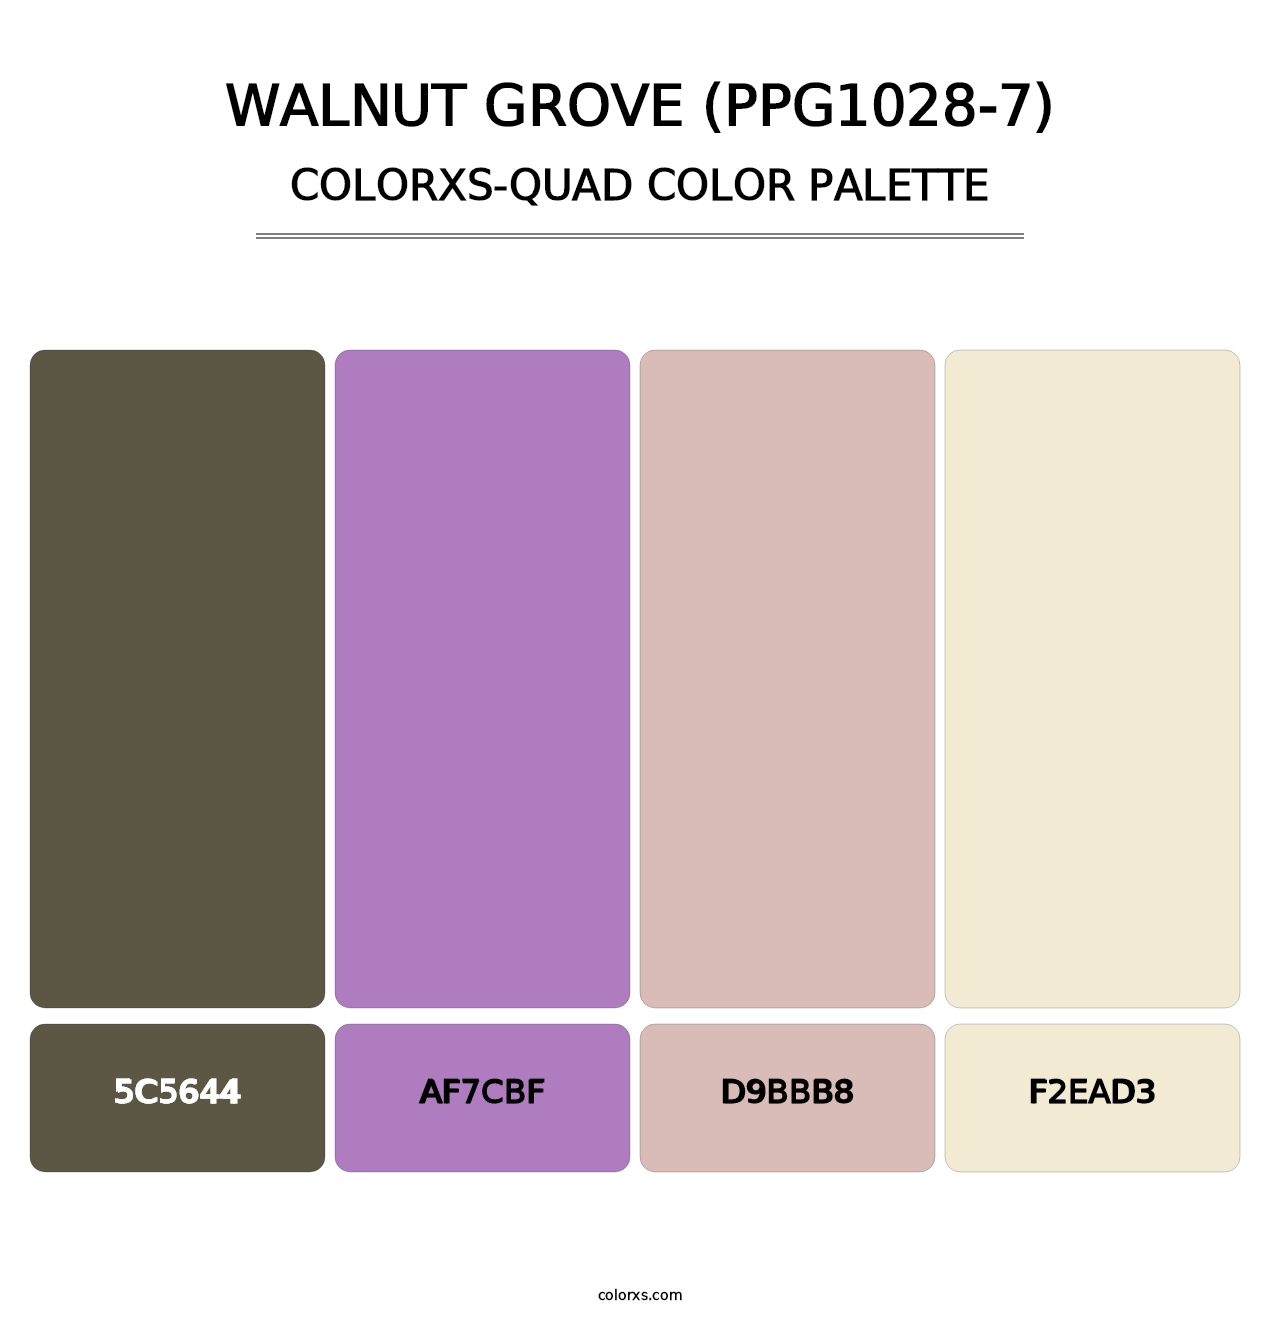 Walnut Grove (PPG1028-7) - Colorxs Quad Palette